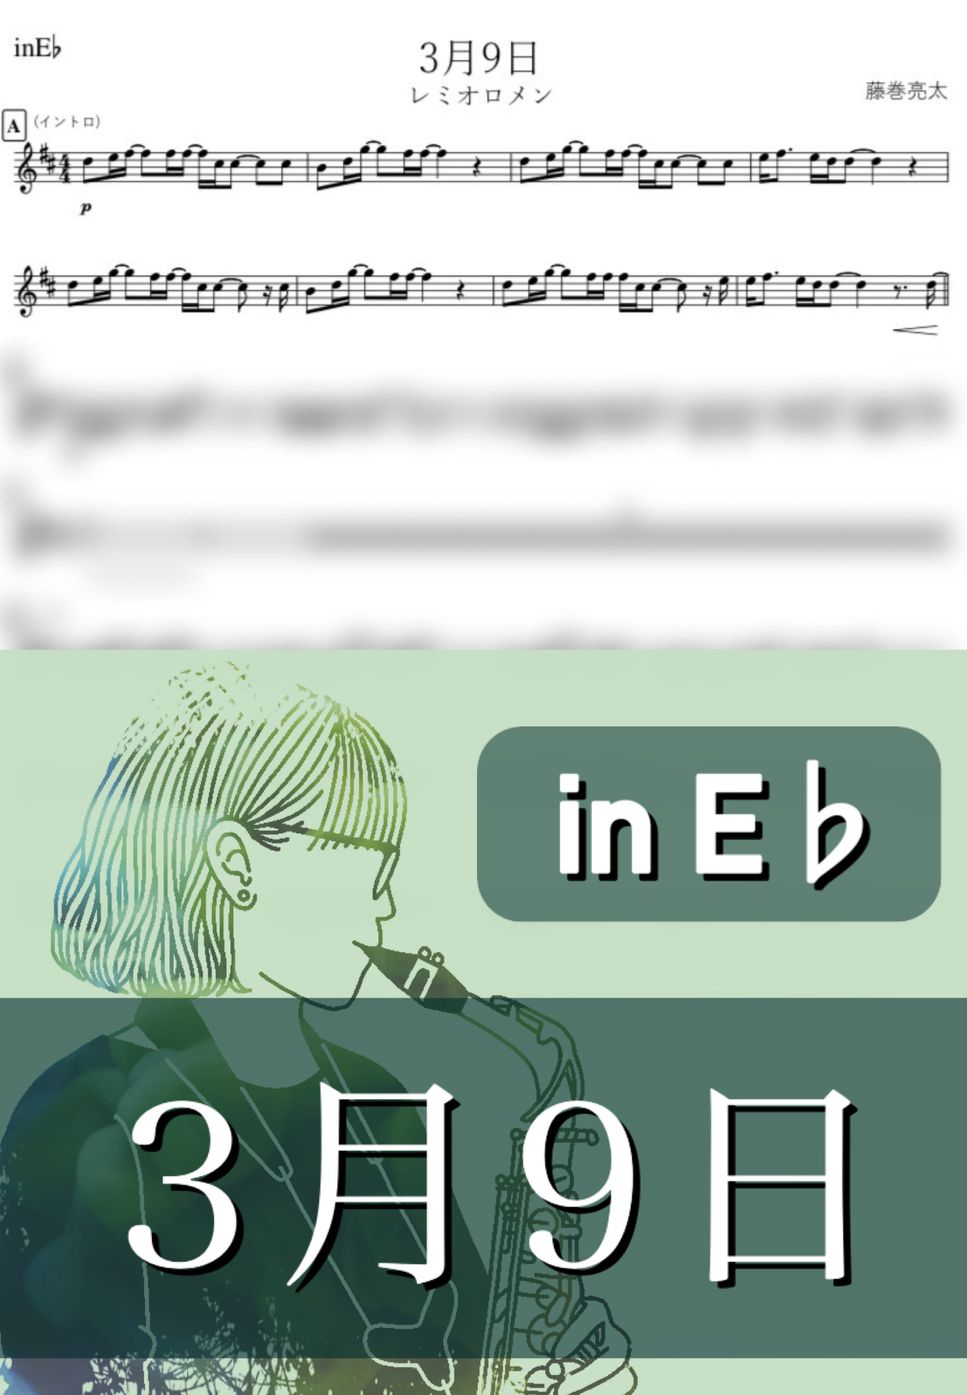 レミオロメン - 3月9日 (E♭) by kanamusic